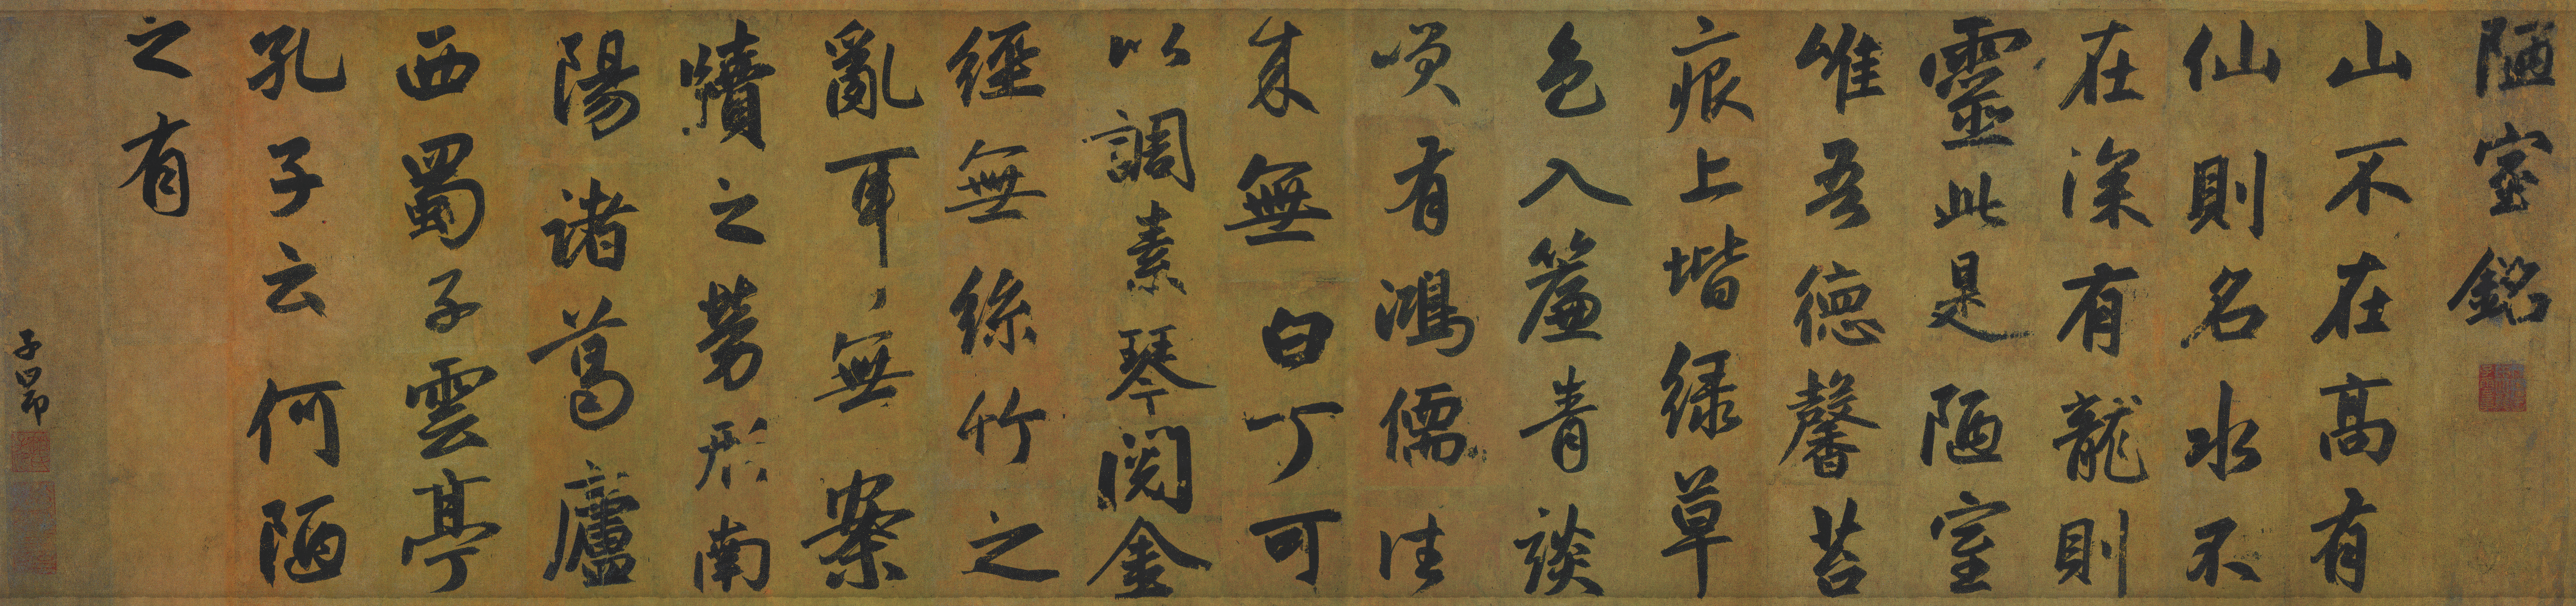 General 8193x1928 kanji Asia text calligraphy Zhao Mengfu Liu Yuxi